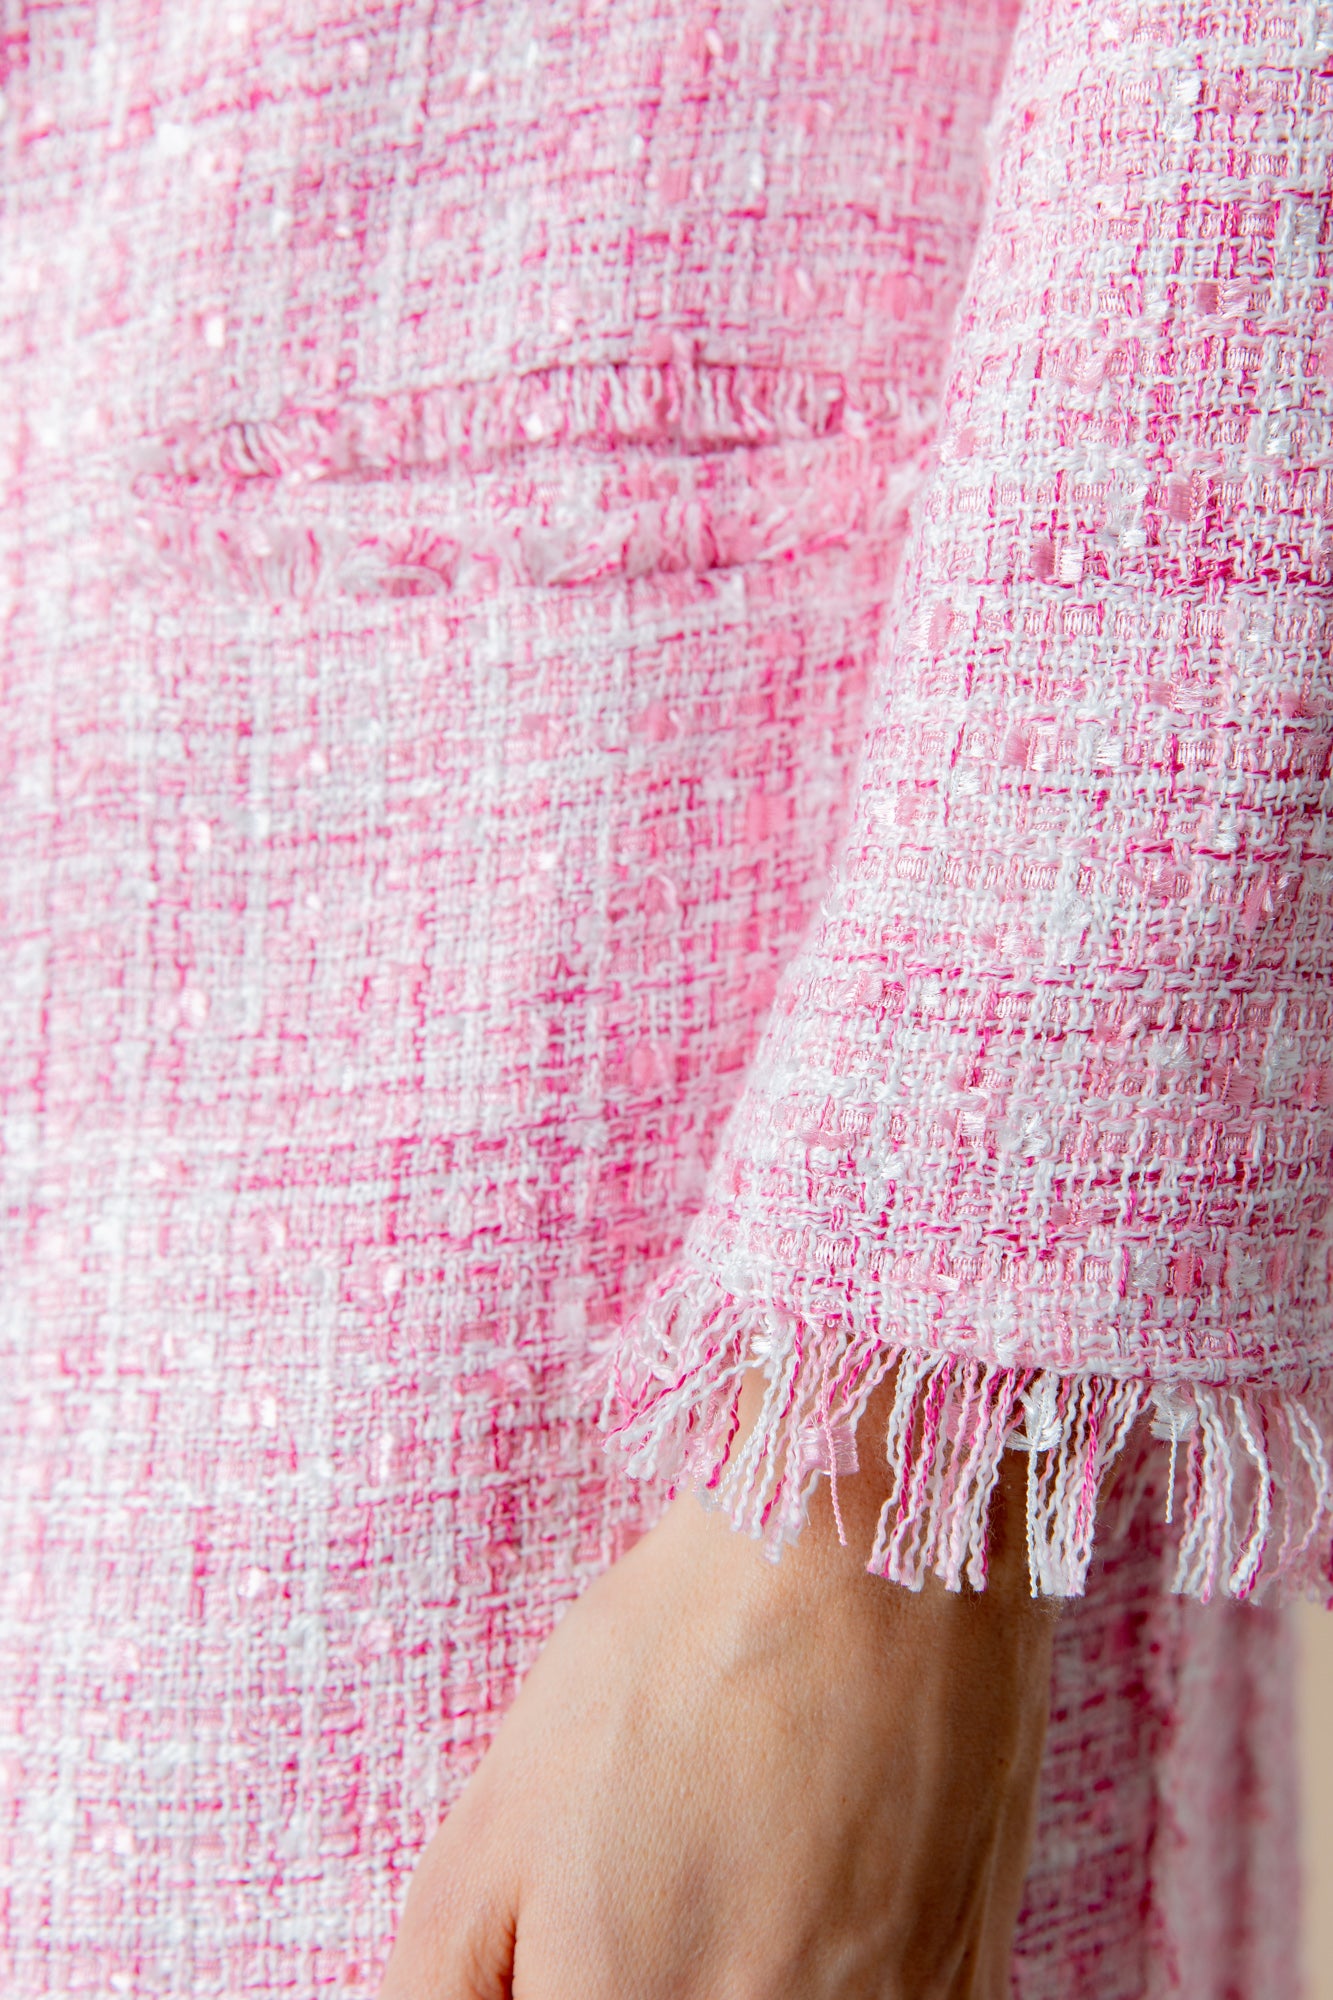 Tweedmantel in Rosa im Fransen Detailfoto